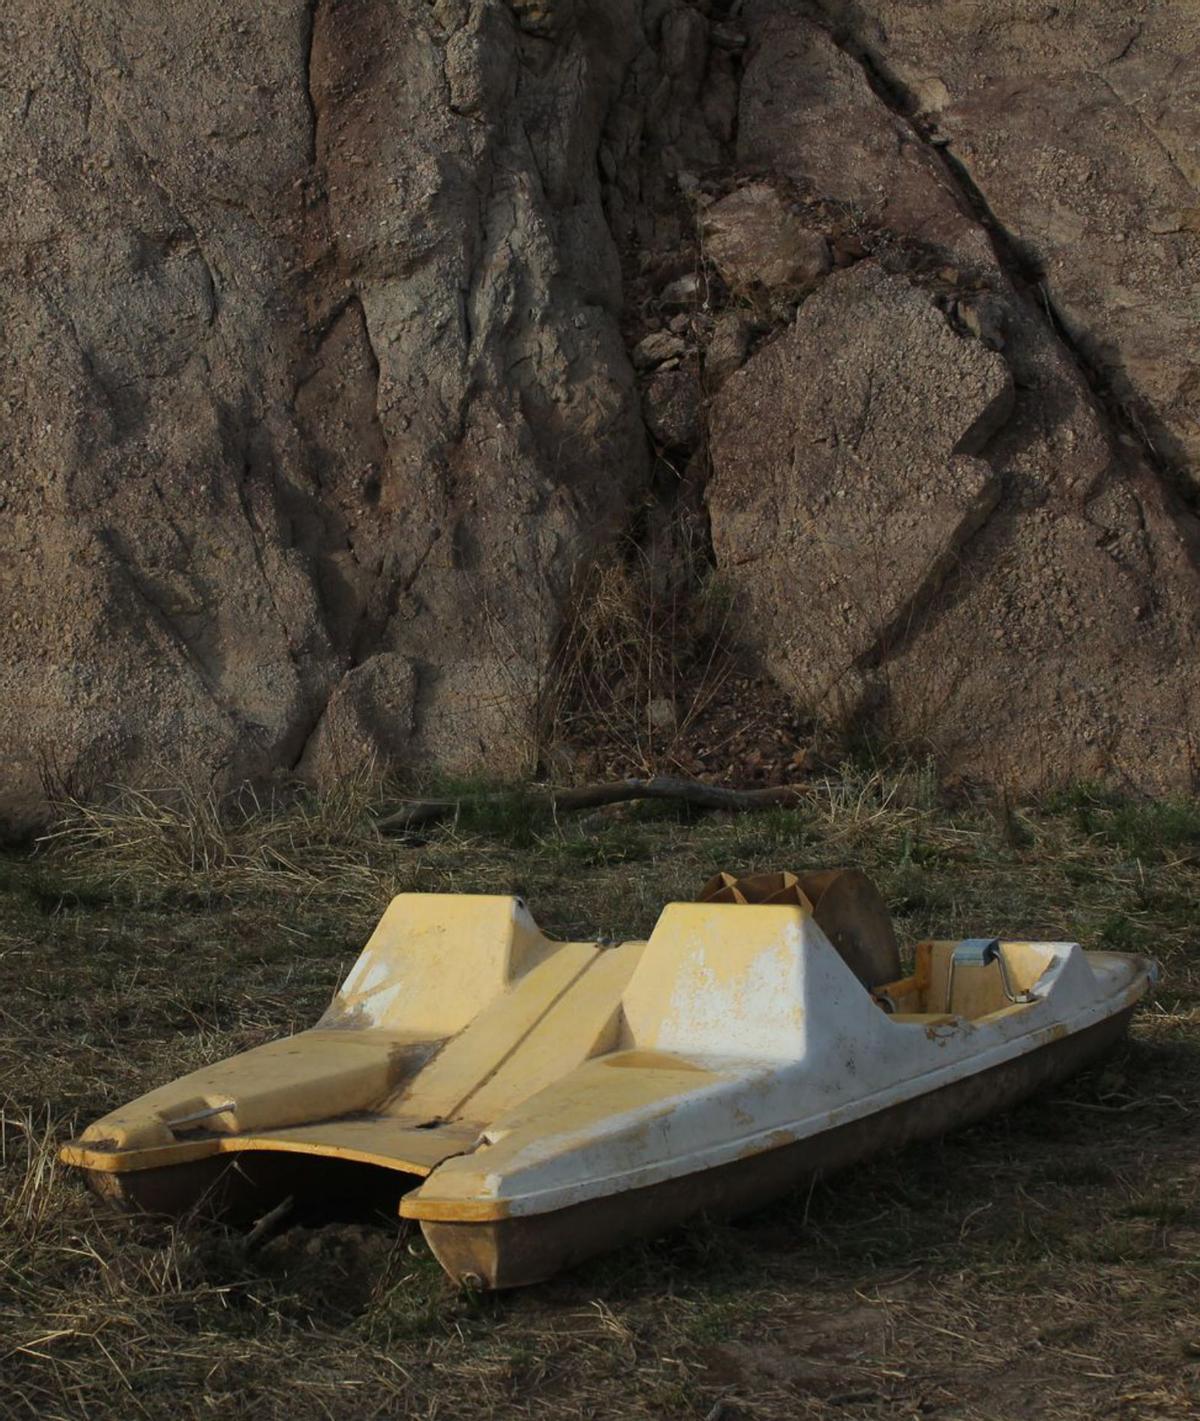 Una embarcació abandonada descansa en un marge sec. | ROCCO MURARO 